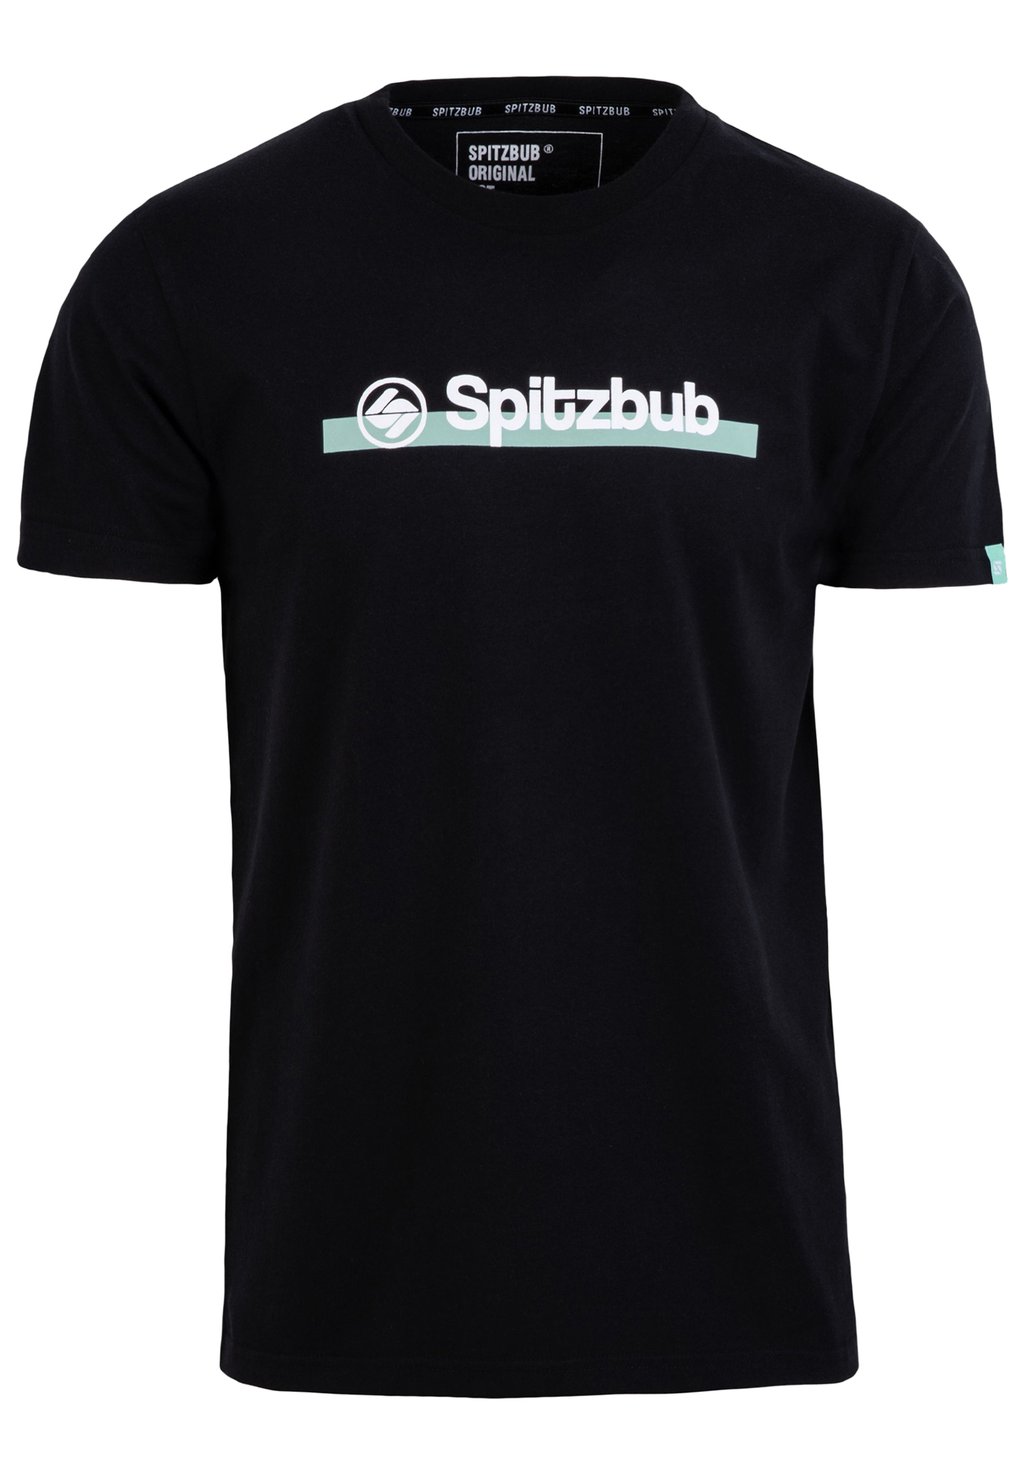 Футболка с принтом Spitzbub, цвет schwarz футболка базовая full spitzbub цвет schwarz